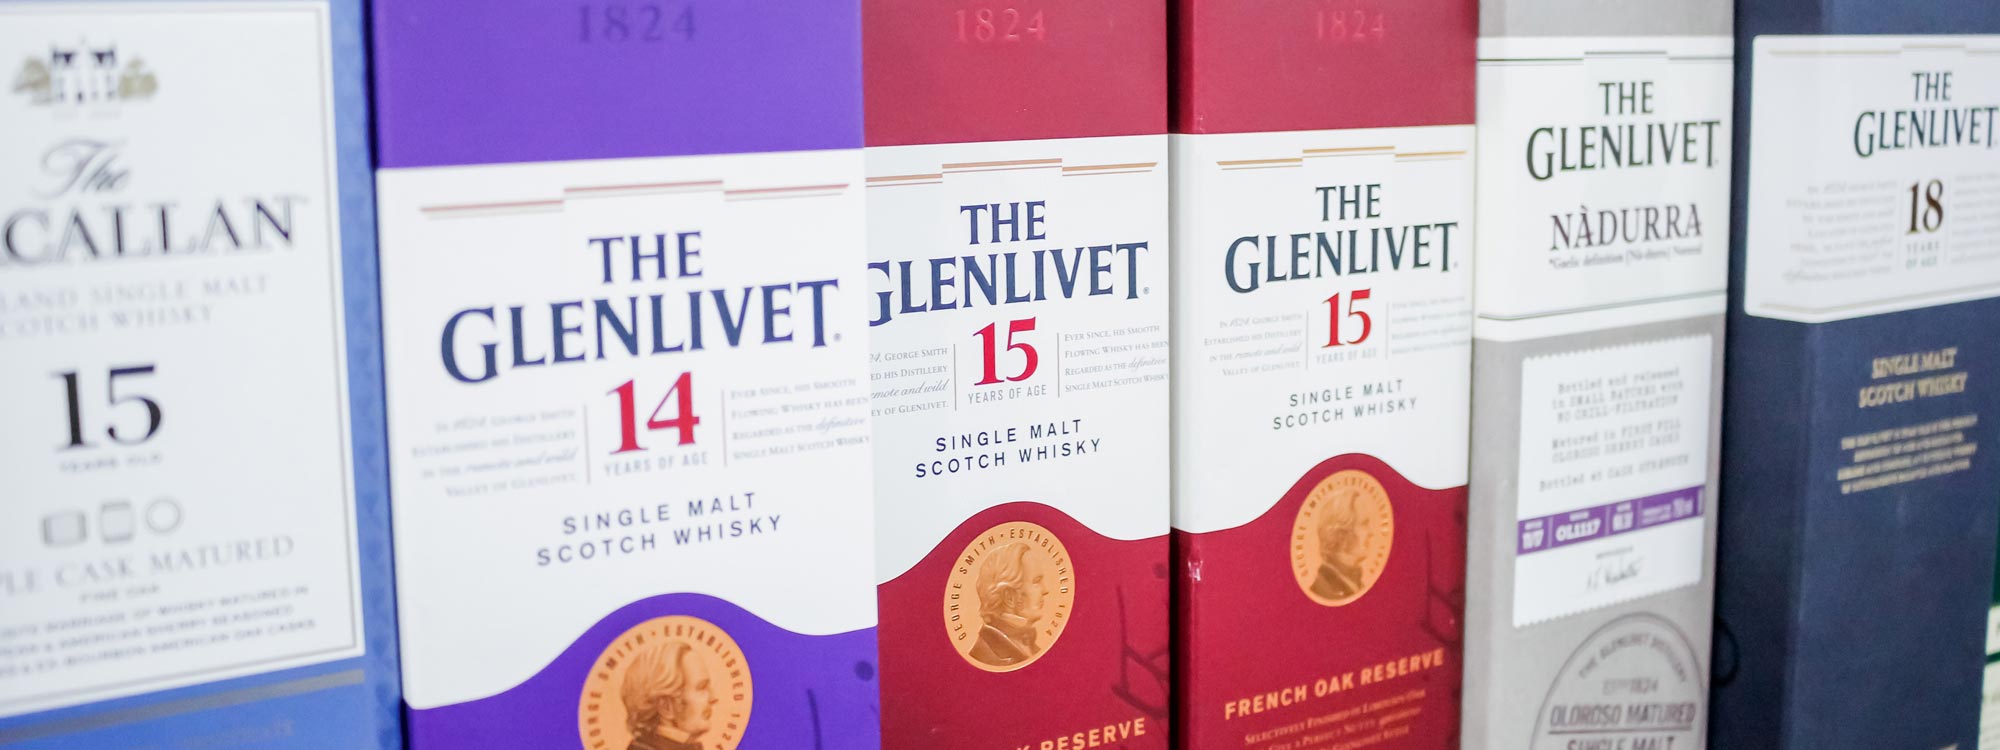 The Glenlivet Whisky